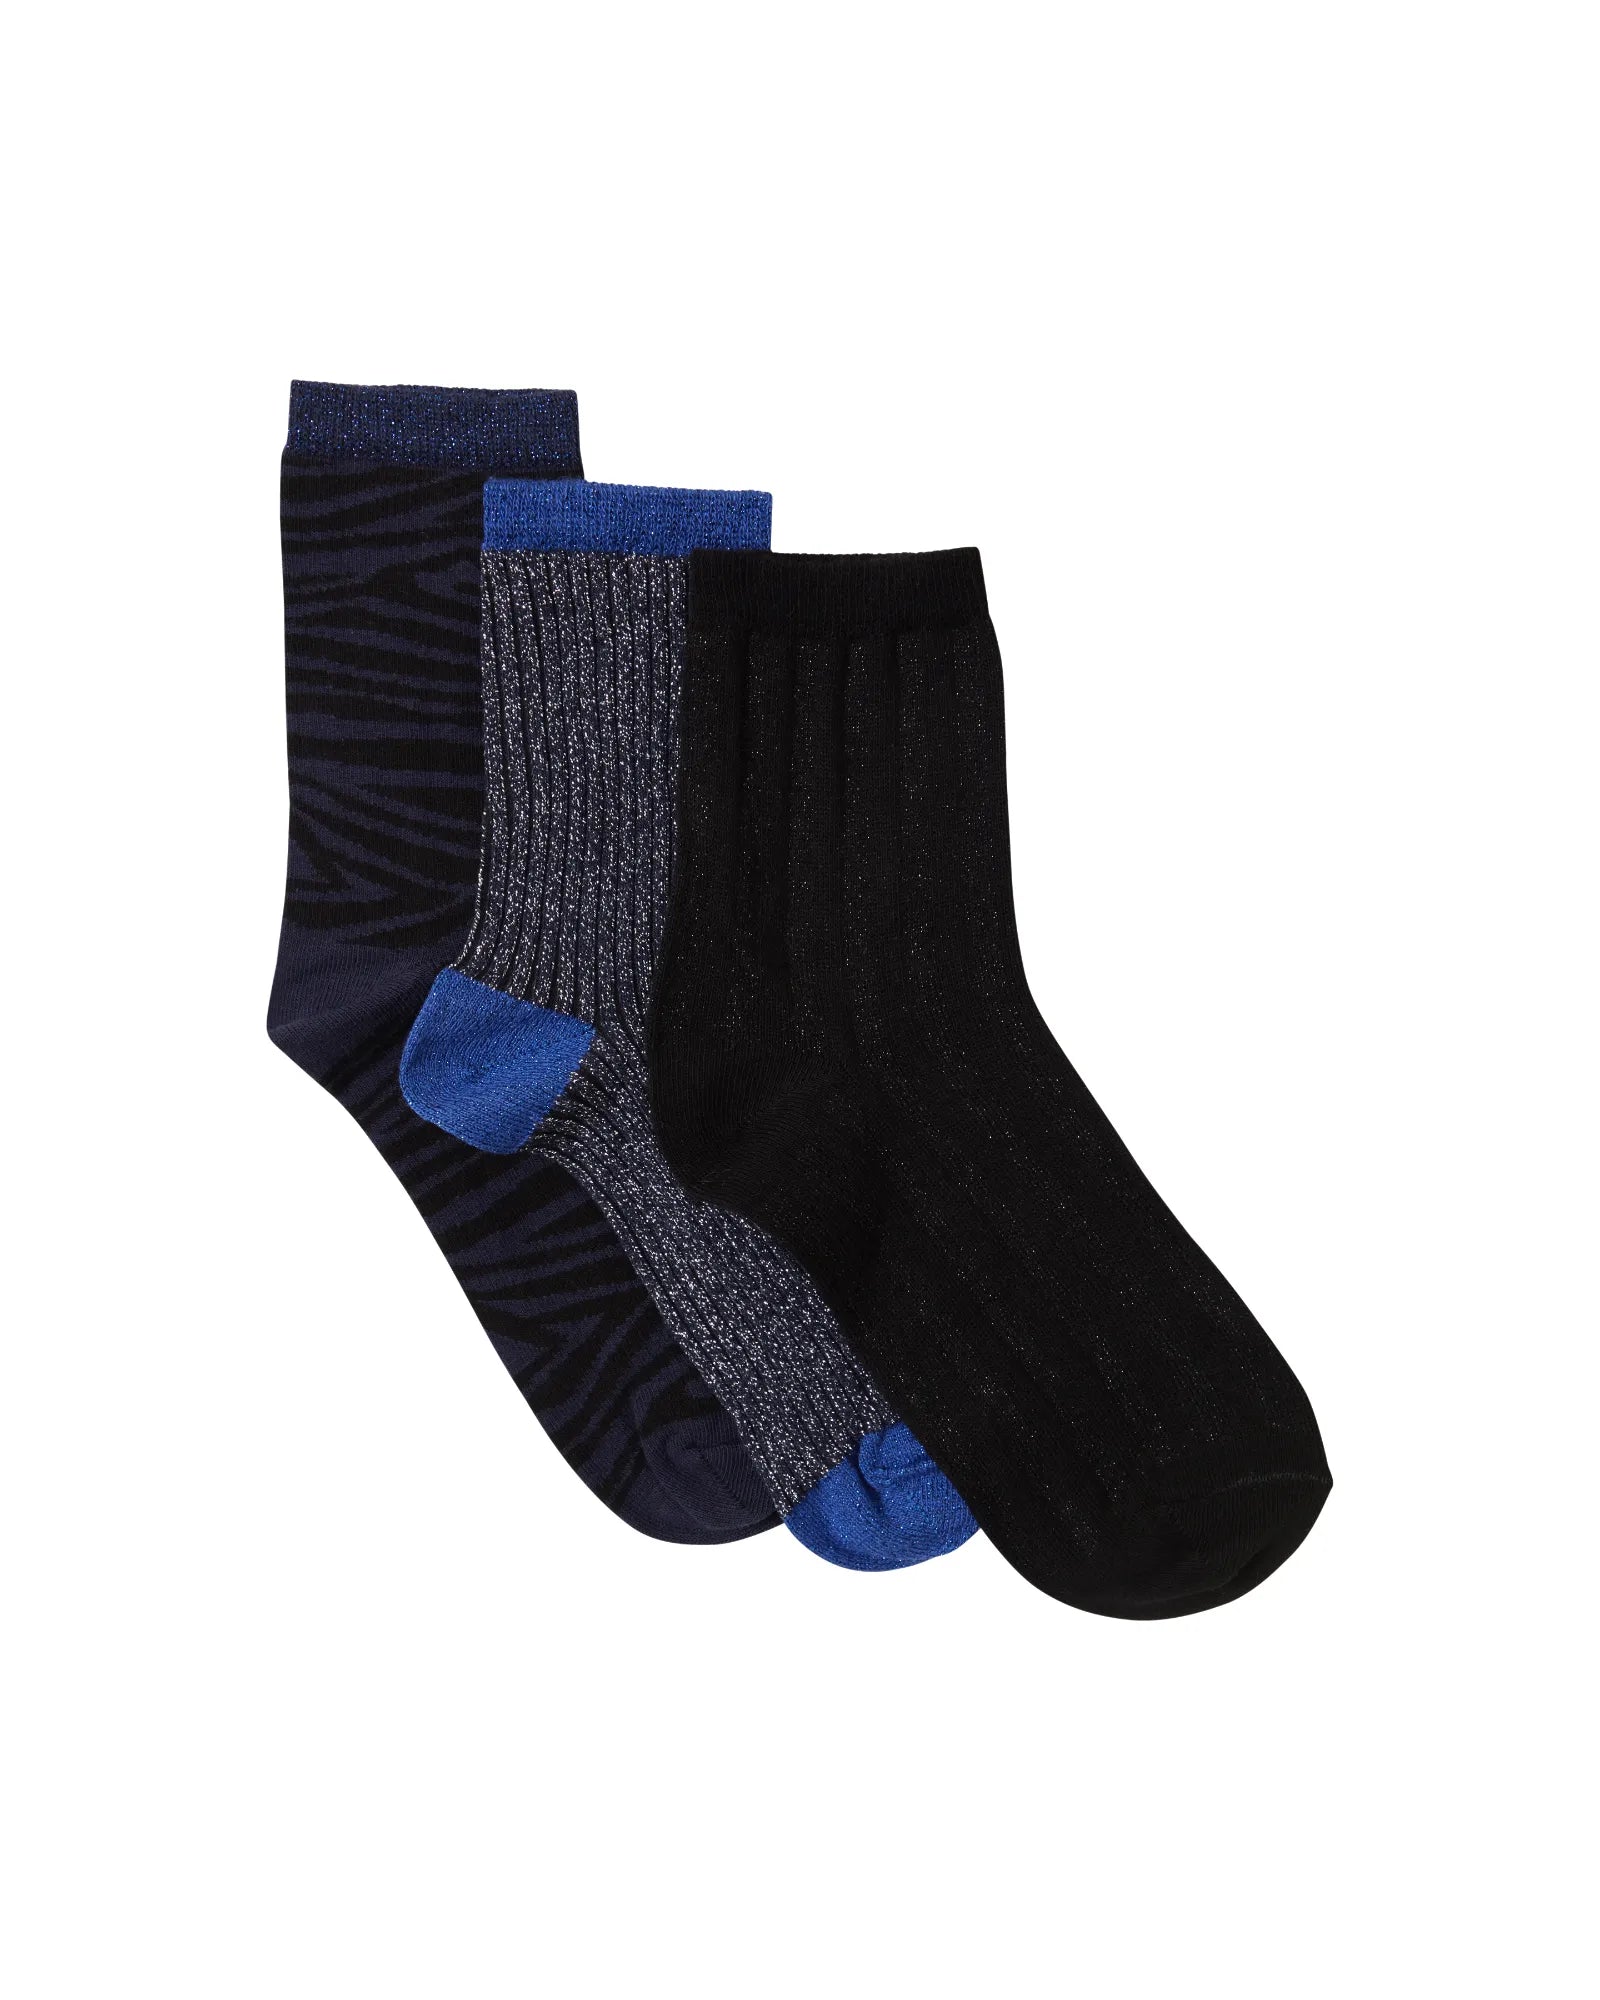 FALUVIE Socks 3-Pack - Navy Blazer Mix